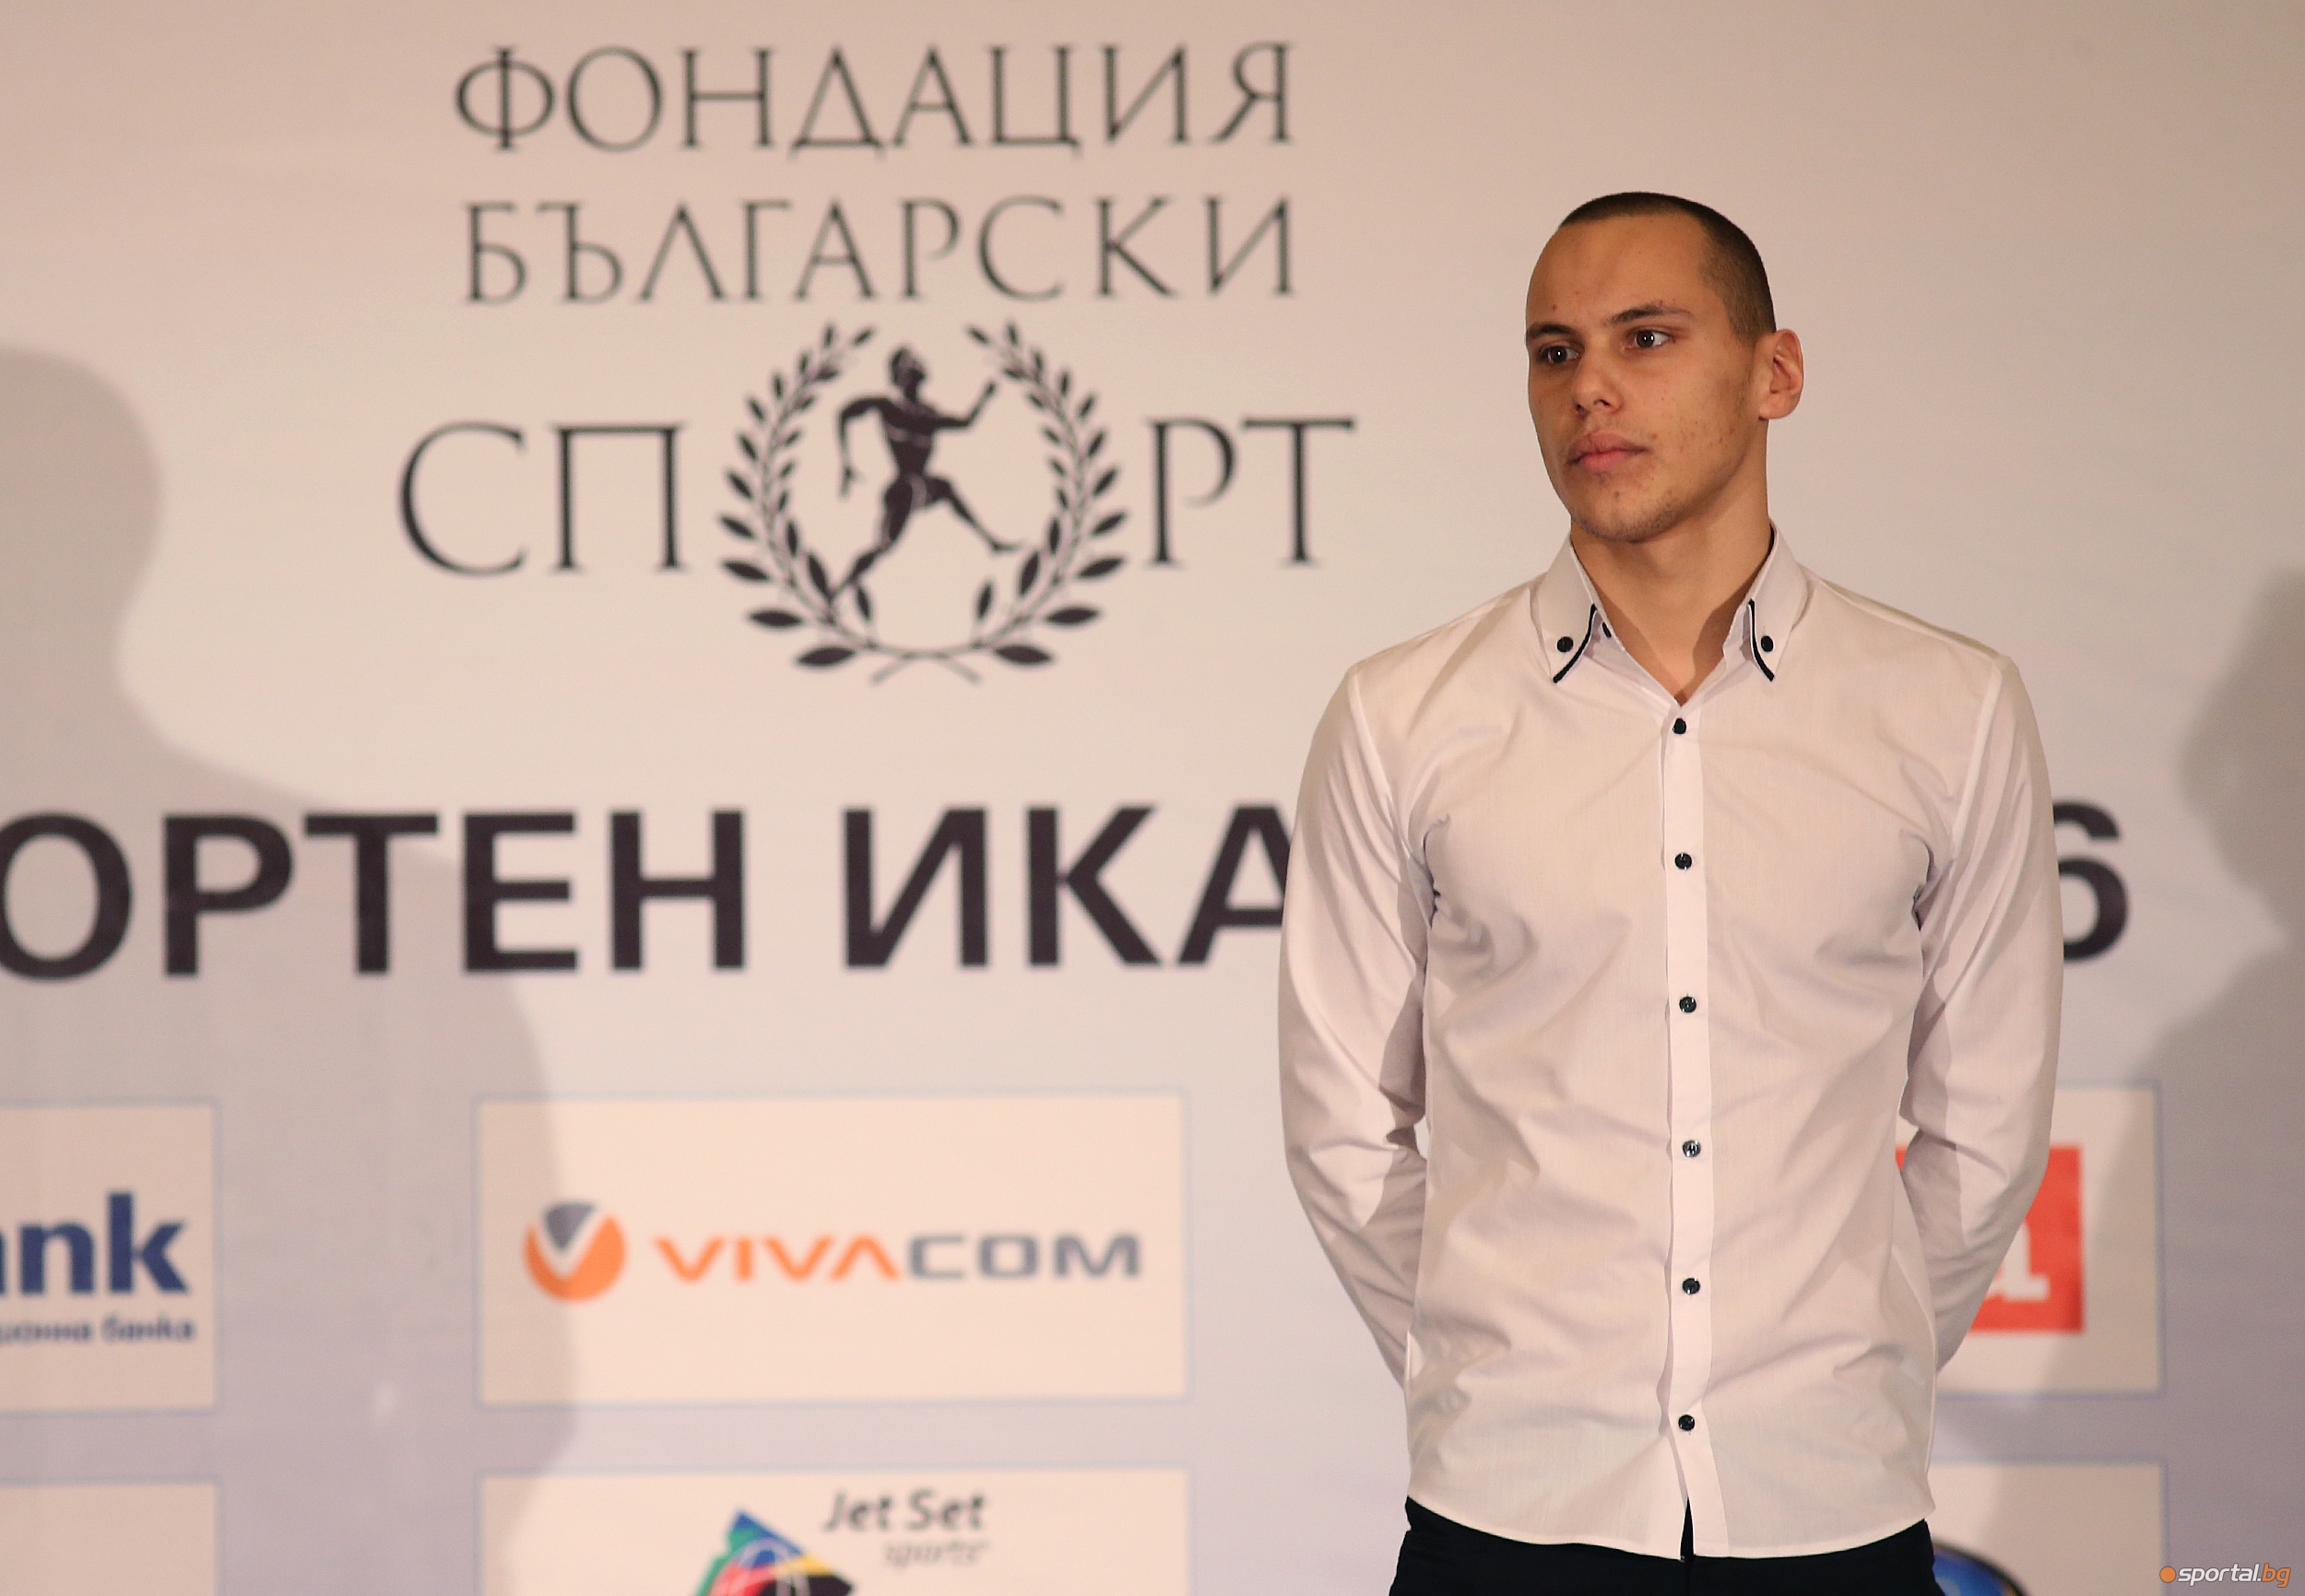 Фондация "Български спорт" раздаде наградите "Спортен Икар"